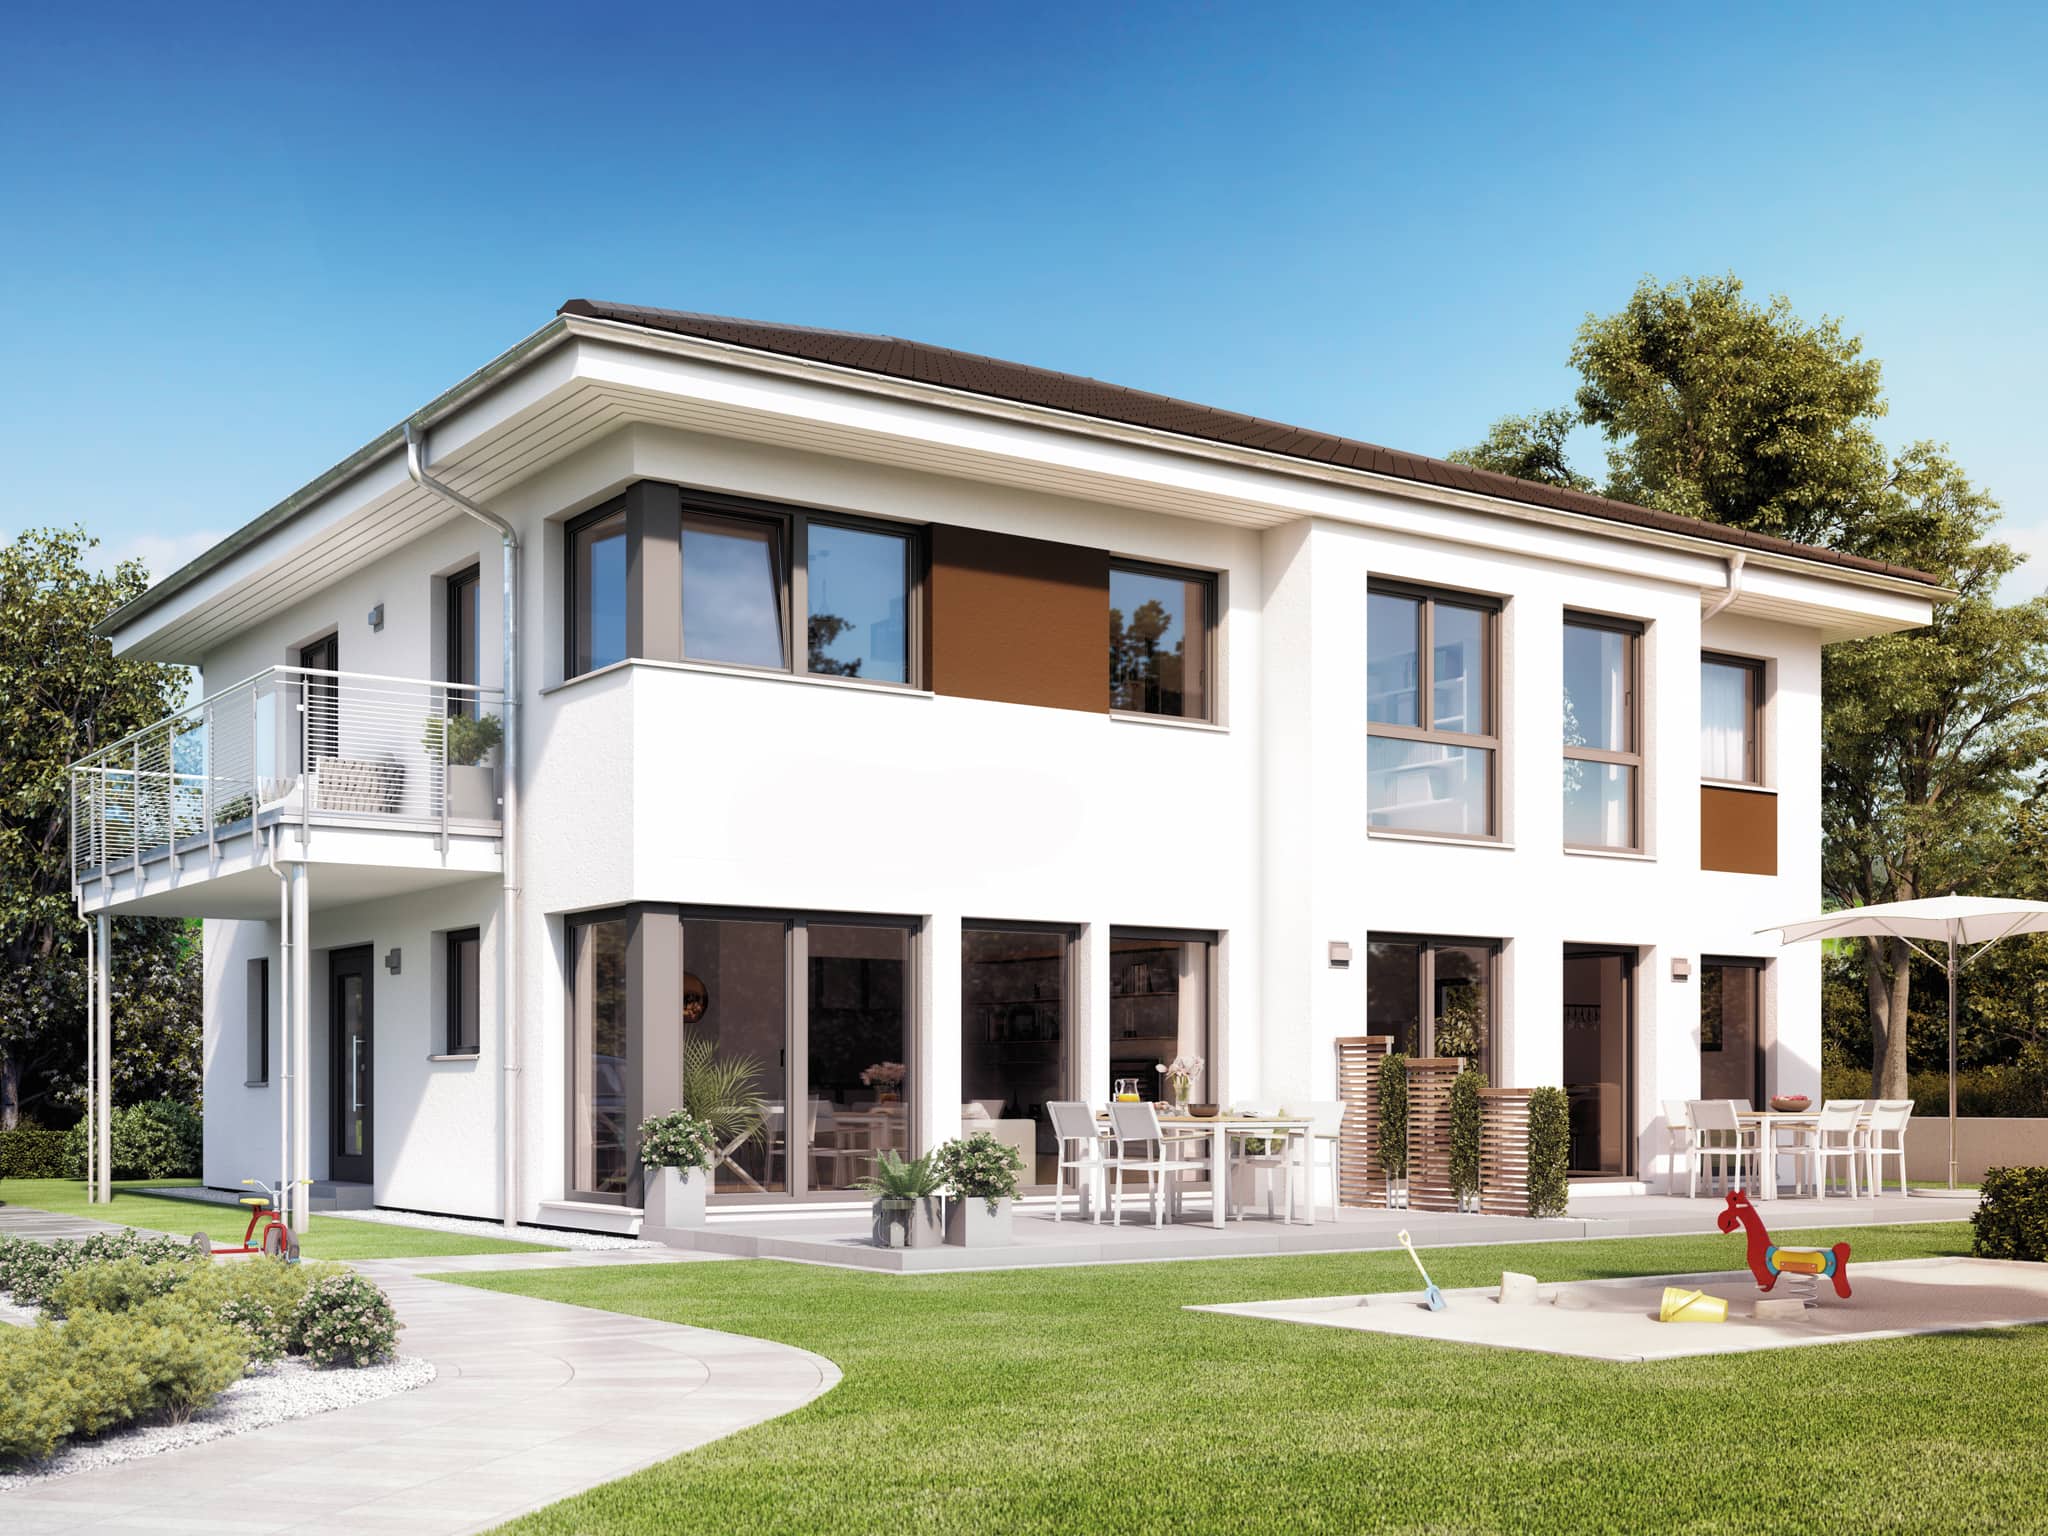 Fertighaus Stadtvilla mit Einliegerwohnung & Walmdach Architektur - Haus bauen Ideen Einfamilienhaus SOLUTION 230 V6 von Living Haus - HausbauDirekt.de